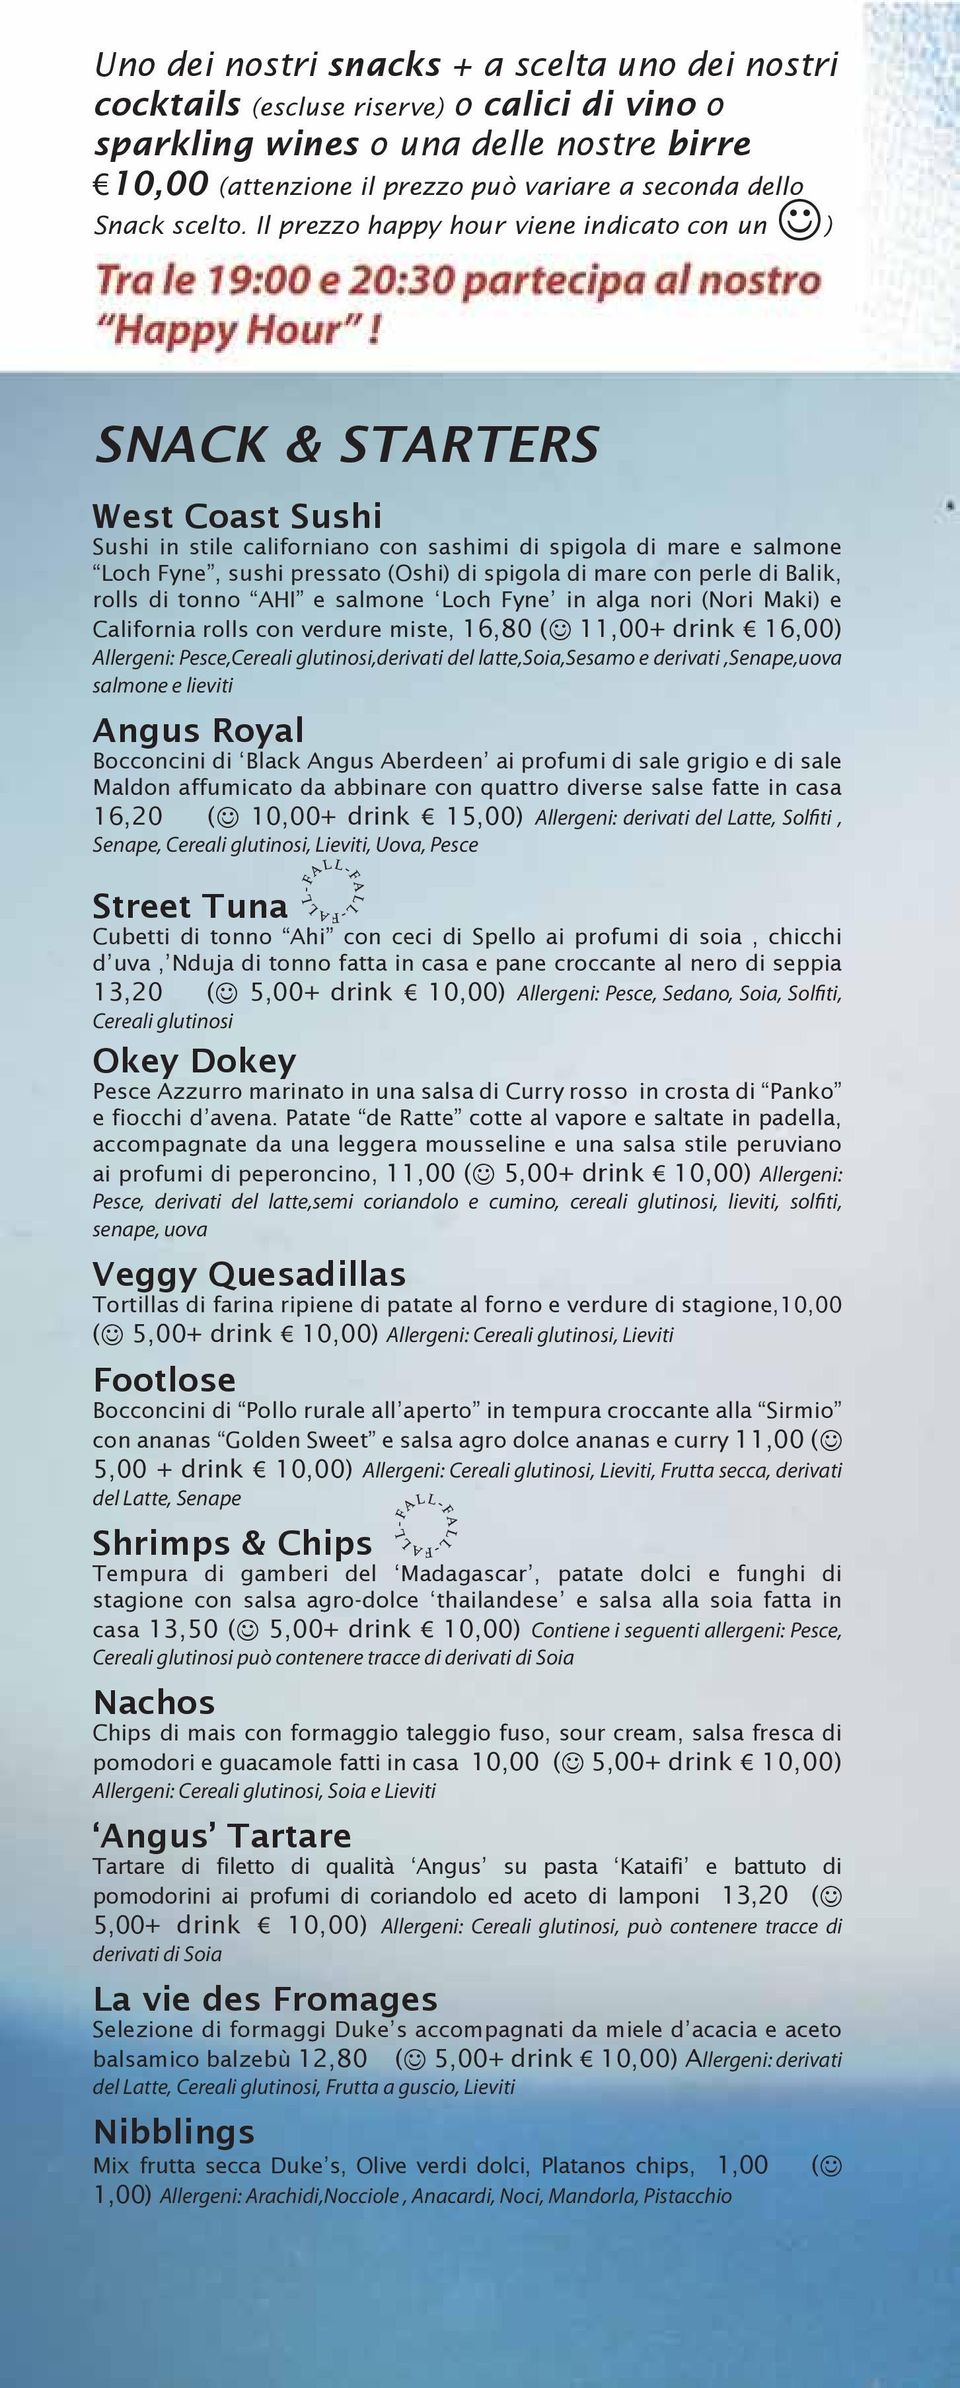 Il prezzo happy hour viene indicato con un ) SNACK & STARTERS West Coast Sushi Sushi in stile californiano con sashimi di spigola di mare e salmone Loch Fyne, sushi pressato (Oshi) di spigola di mare